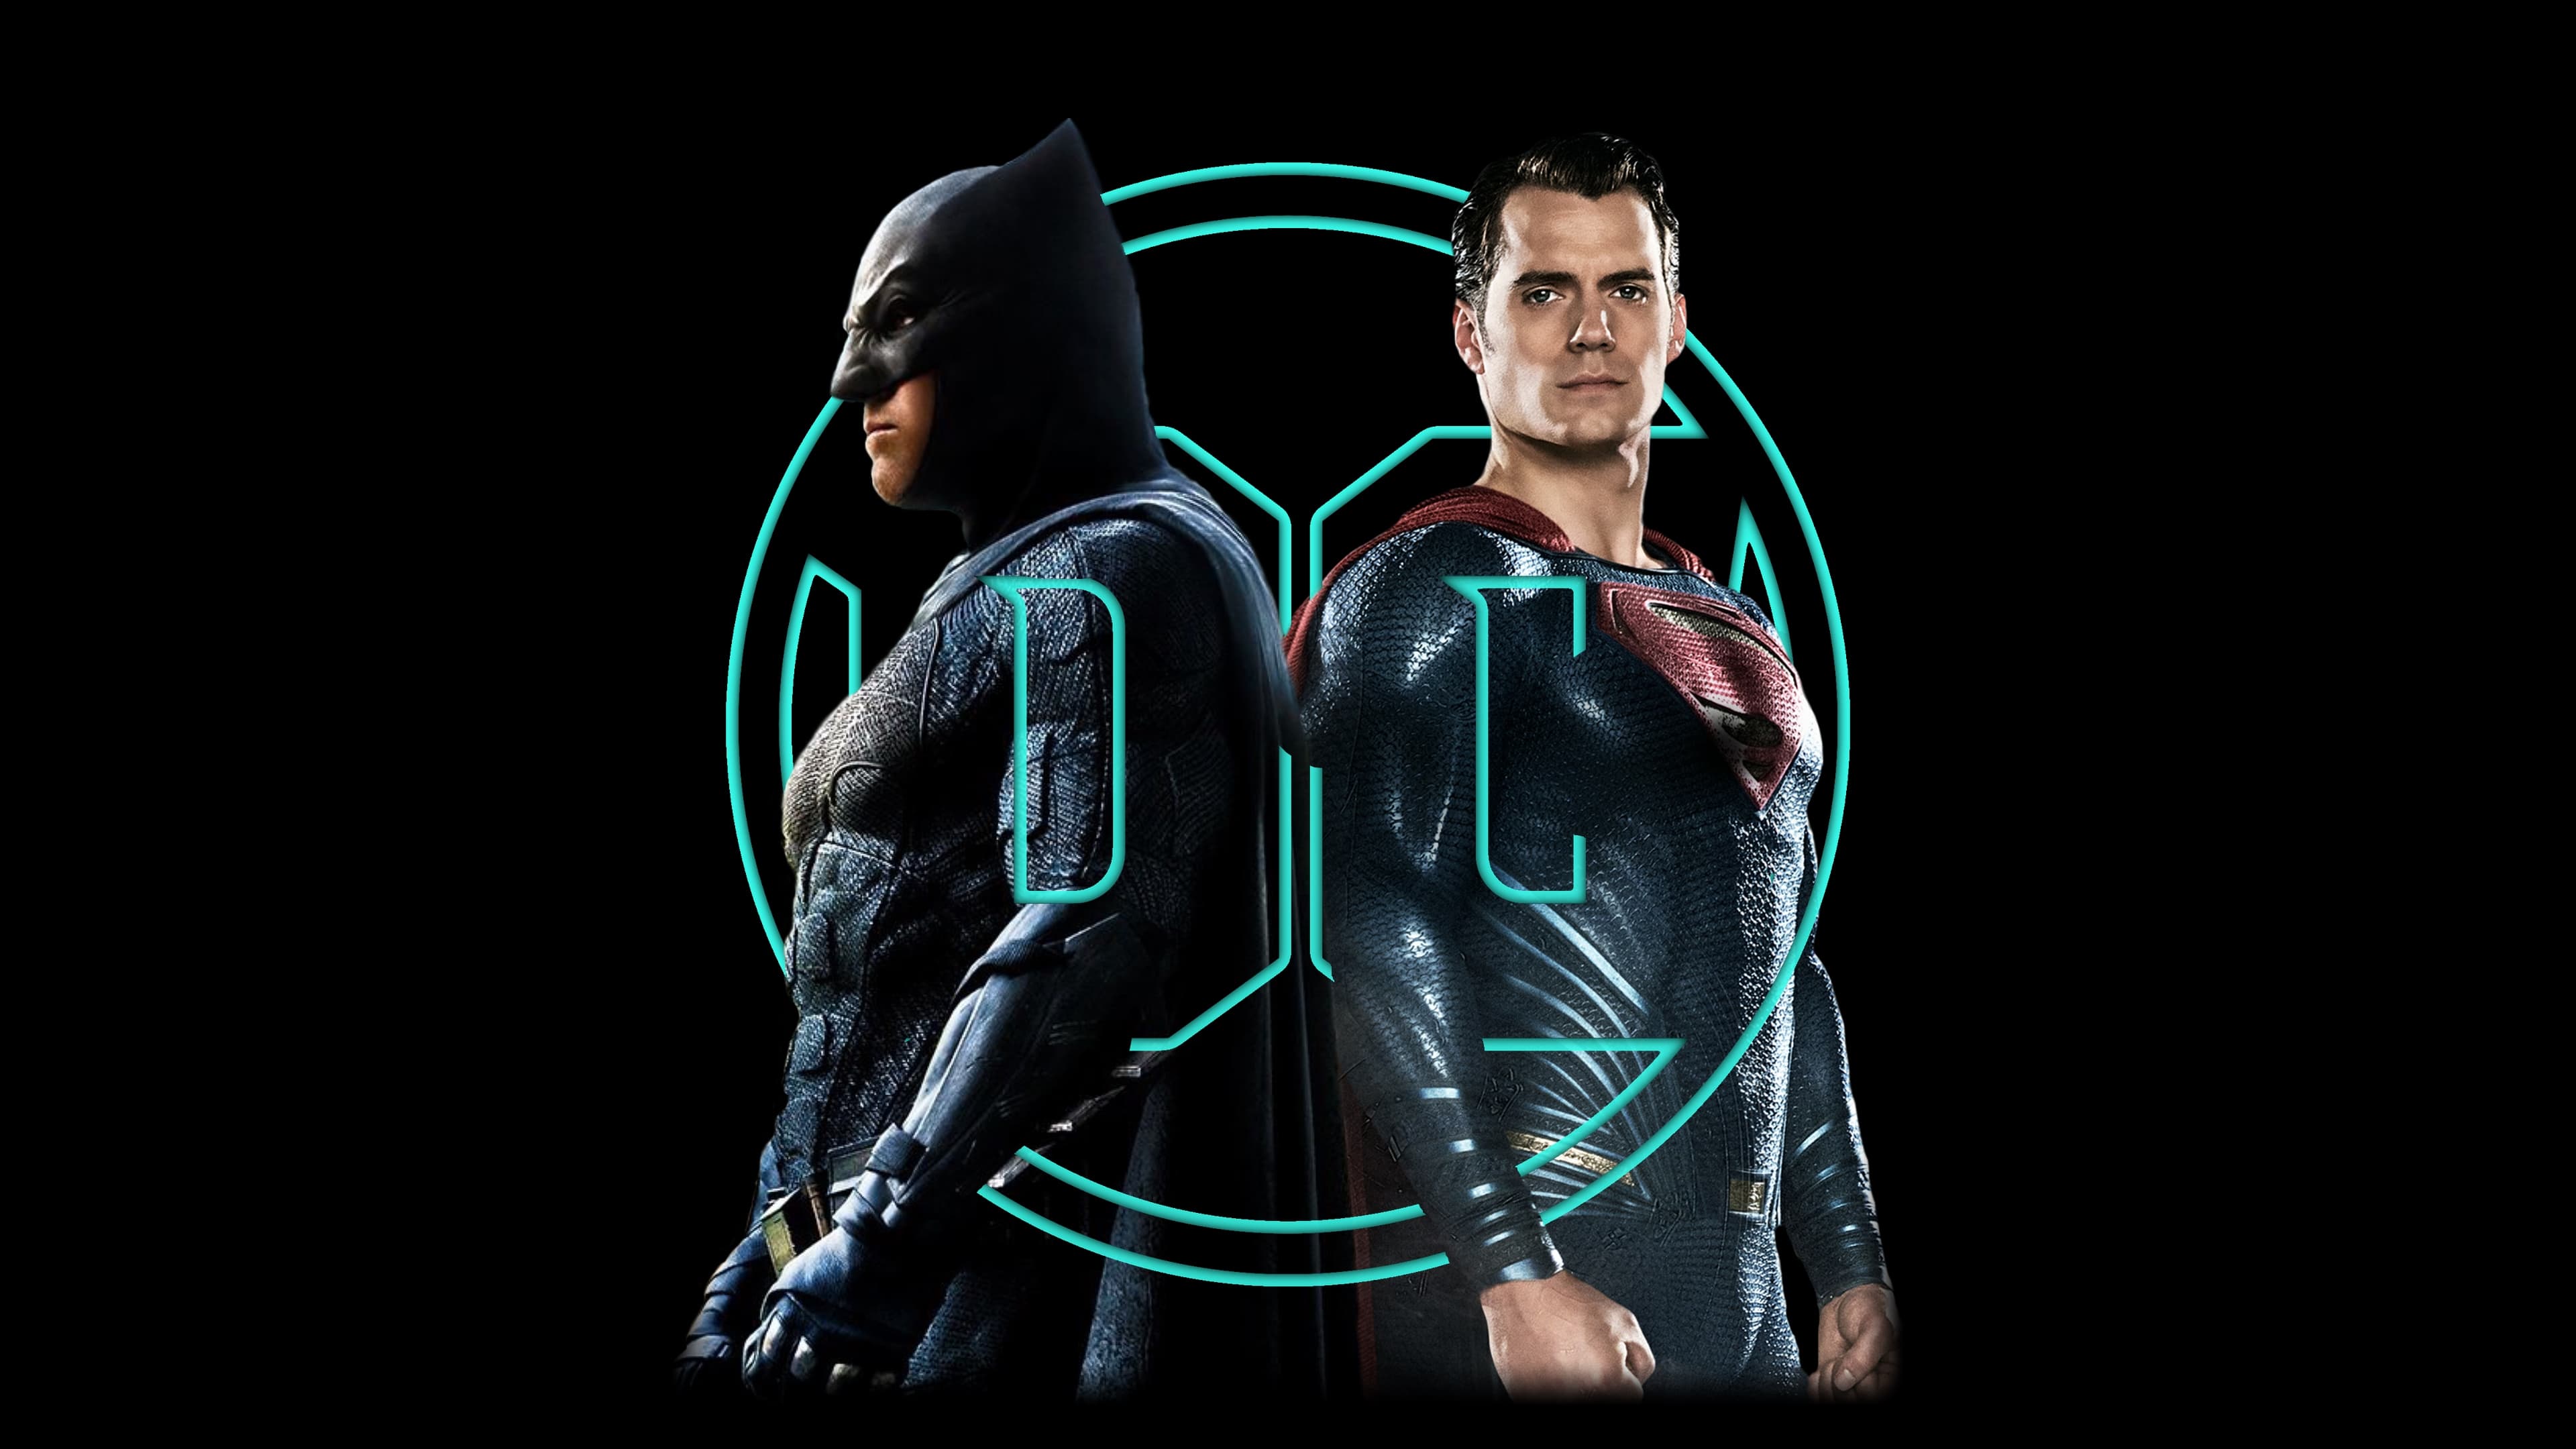 Batman ve Superman: Adaletin Şafağı